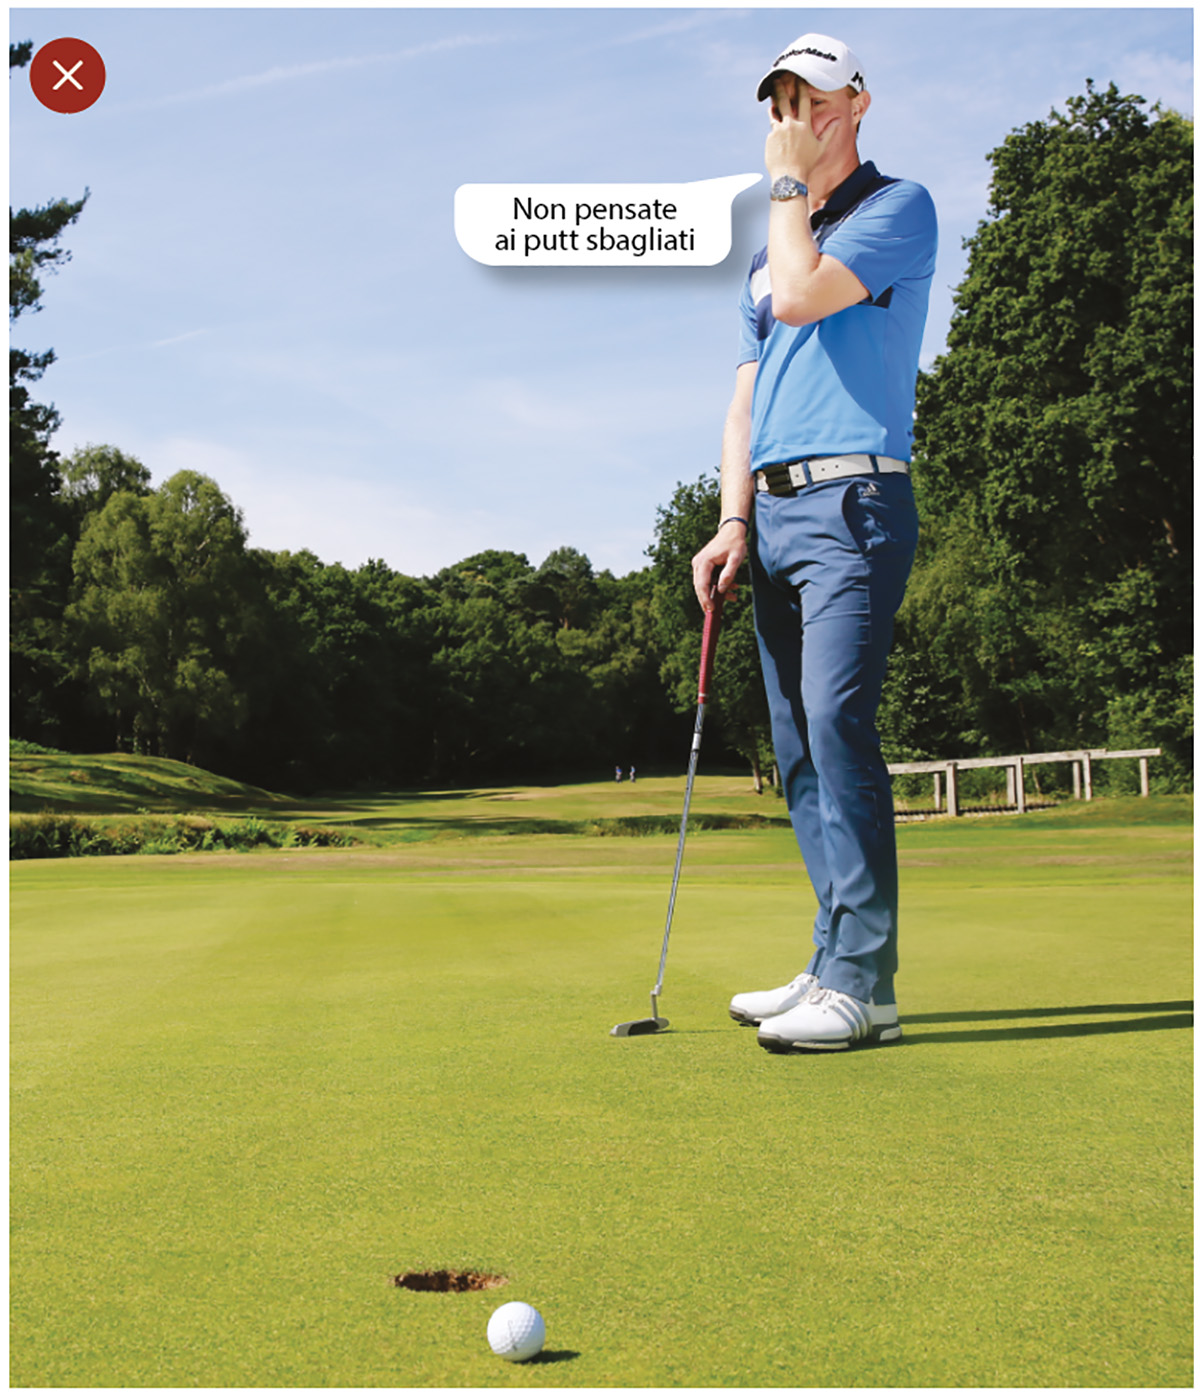 Pocket Golf - La Guida al Nostro Gioco di Putt